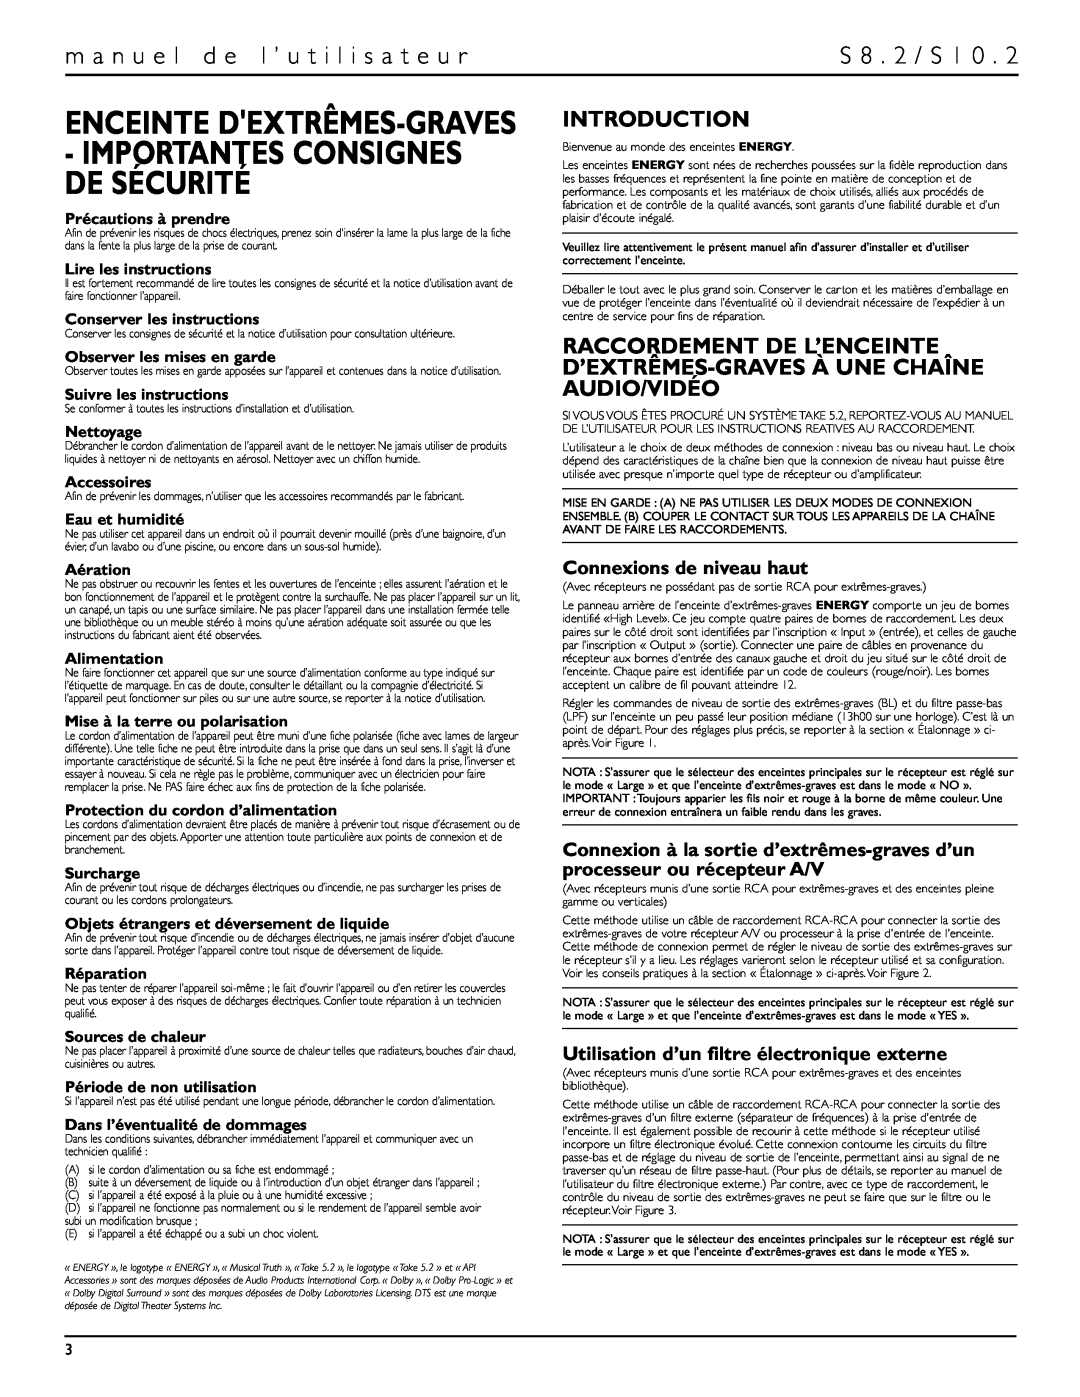 Energy Speaker Systems S10.2 Enceinte Dextrêmes-Graves, Importantes Consignes De Sécurité, S 8 . 2 / S, Introduction 